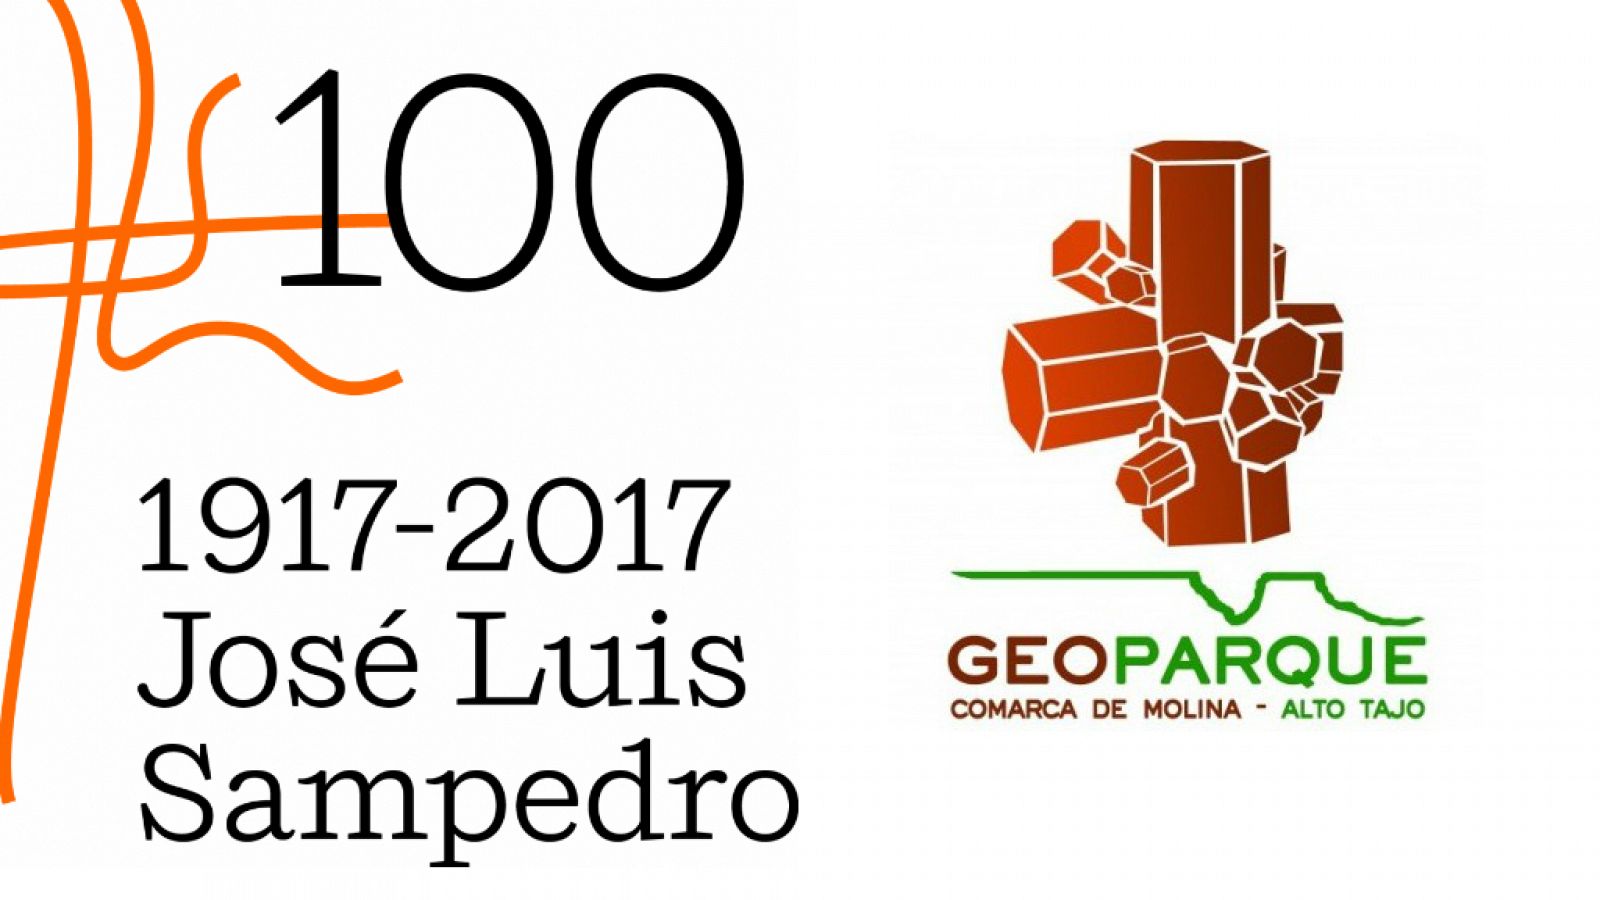 Centenario de José Luis Sampedro y Geoparque de la Comarca de Molina-Alto Tajo